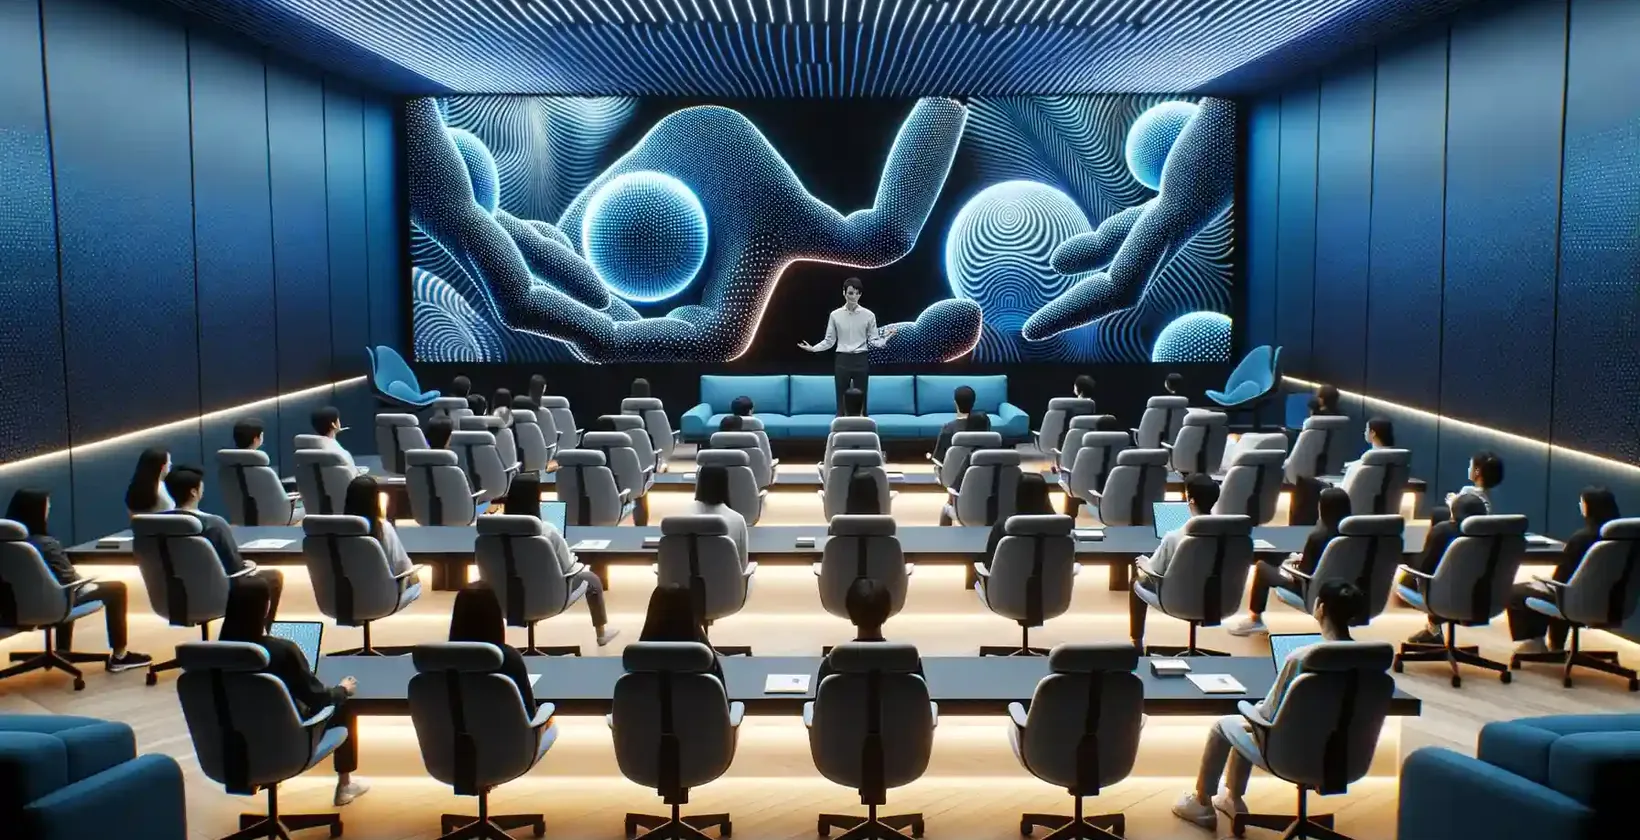 Salle de conférence moderne remplie de participants assis sur des chaises en peluche, chacun équipé d'un poste de travail individuel.